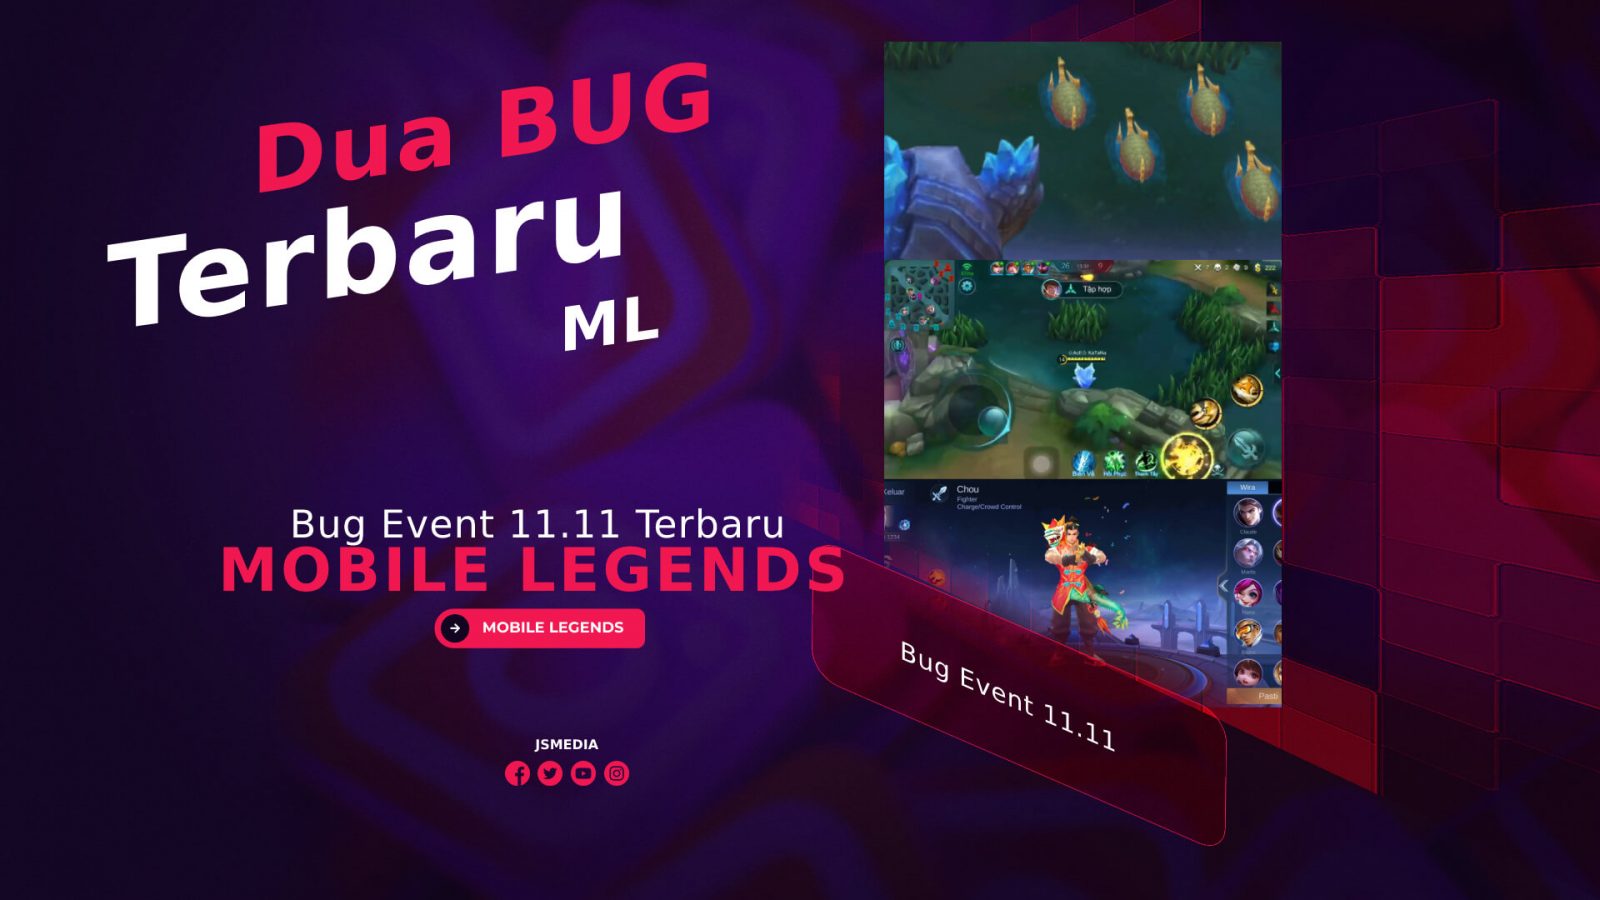 Bug Event 11.11 Terbaru Mobile Legends 2021, Ini Dia Bugnya